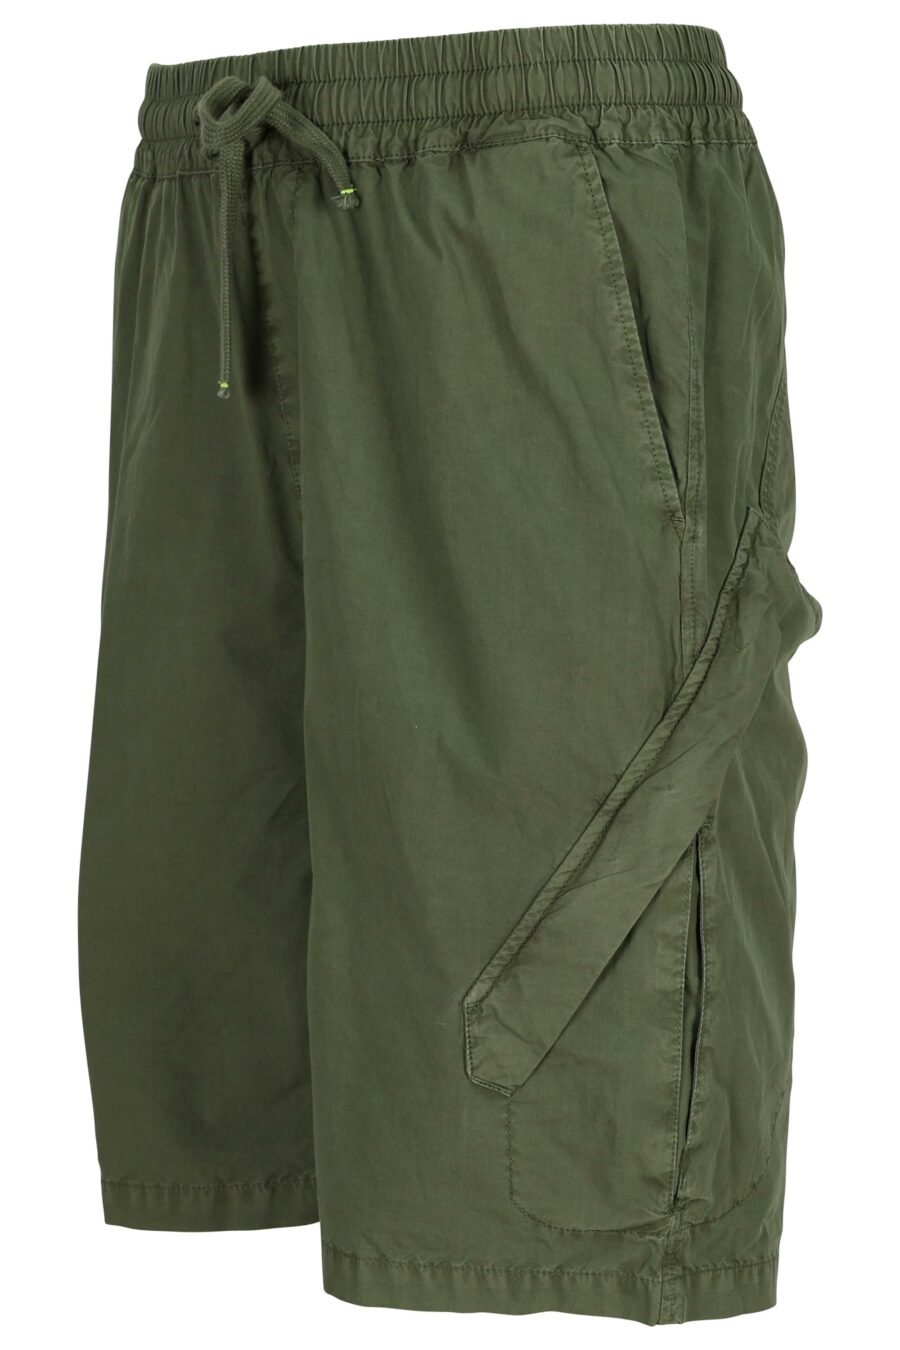 Calças curtas verdes militares com mola - 8058610775407 1